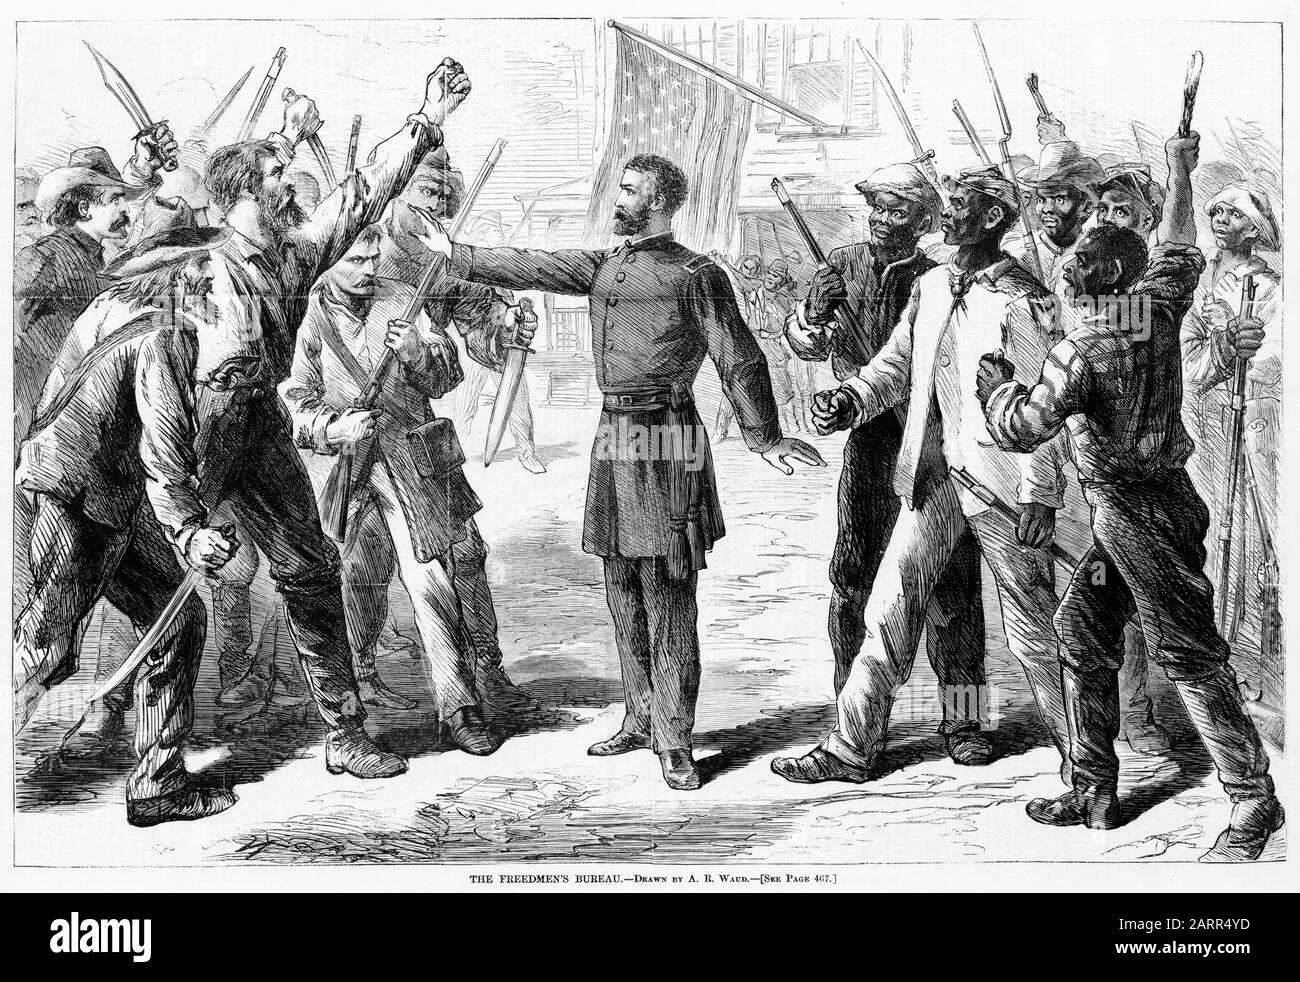 Homme représentant le Bureau de Freedmen (Bureau de Freedman) se tient entre des groupes armés d'Américains blancs et d'Afro-américains, imprimer 1868 Banque D'Images